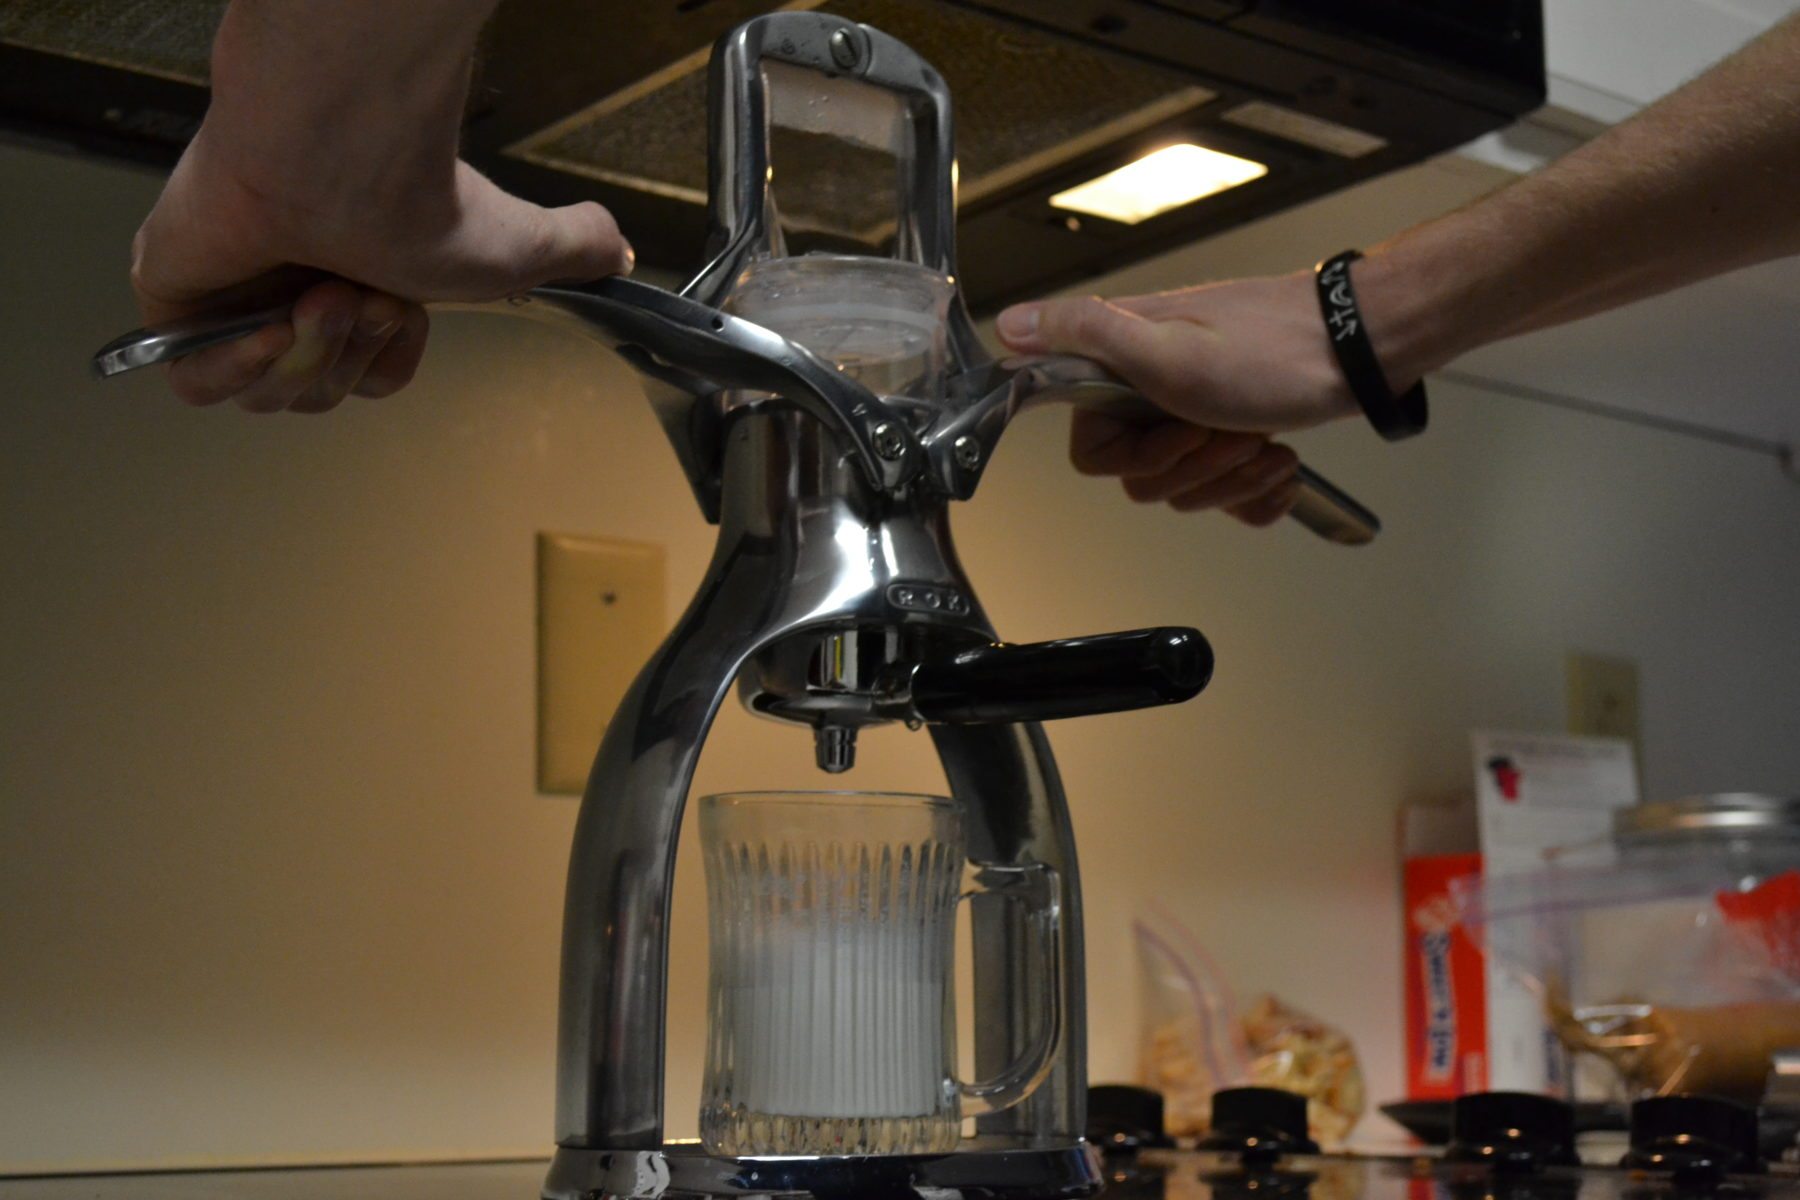 Rok Manual Espresso Maker